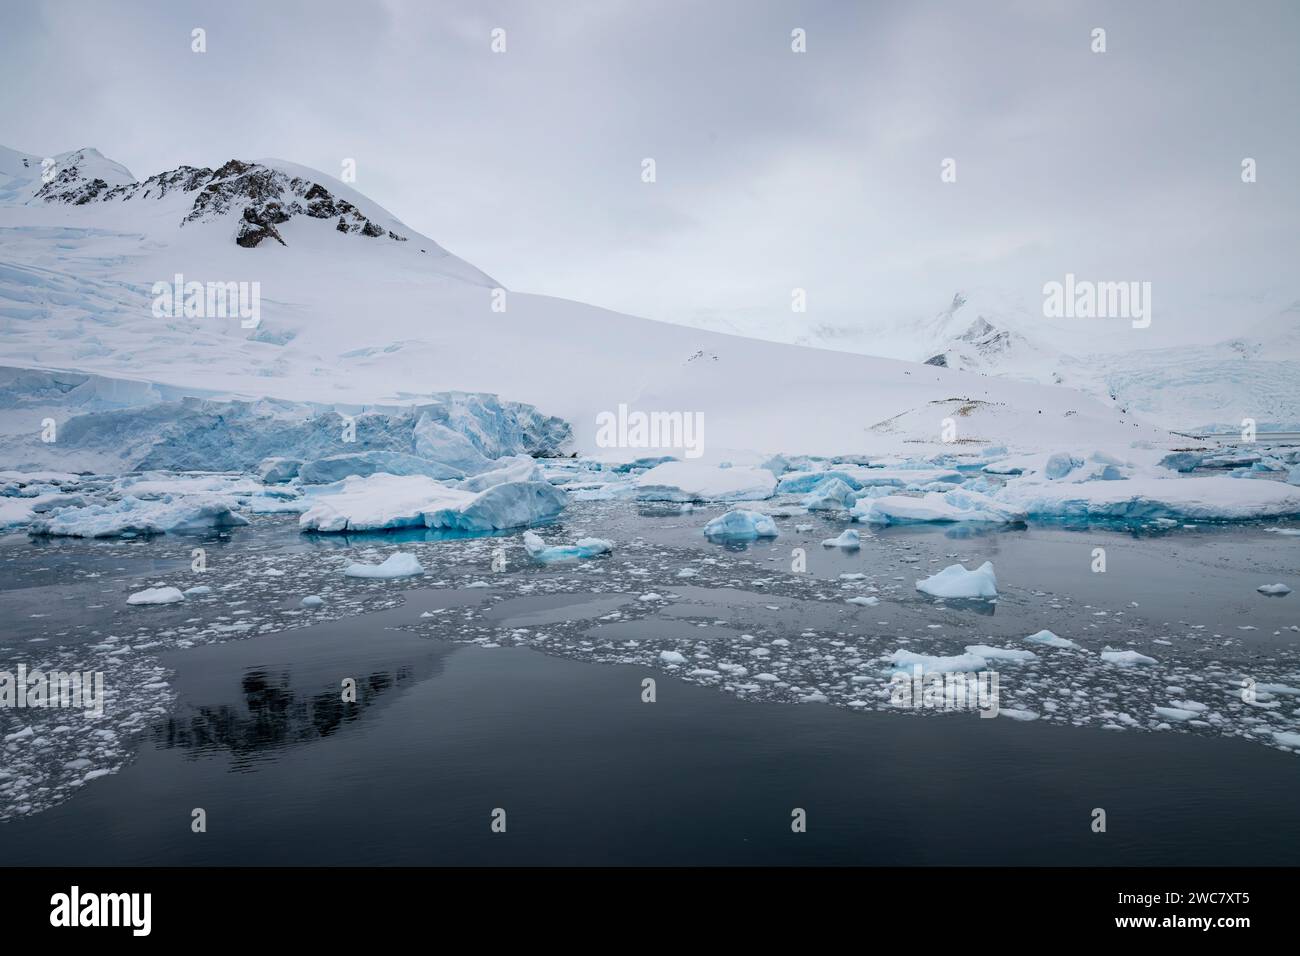 Neko Harbor, Antártida, agua llena de hielo, icebergs, glaciares que parcen más hielo, colonia de cría de pingüinos Gentoo, rodeado de picos nevados Foto de stock